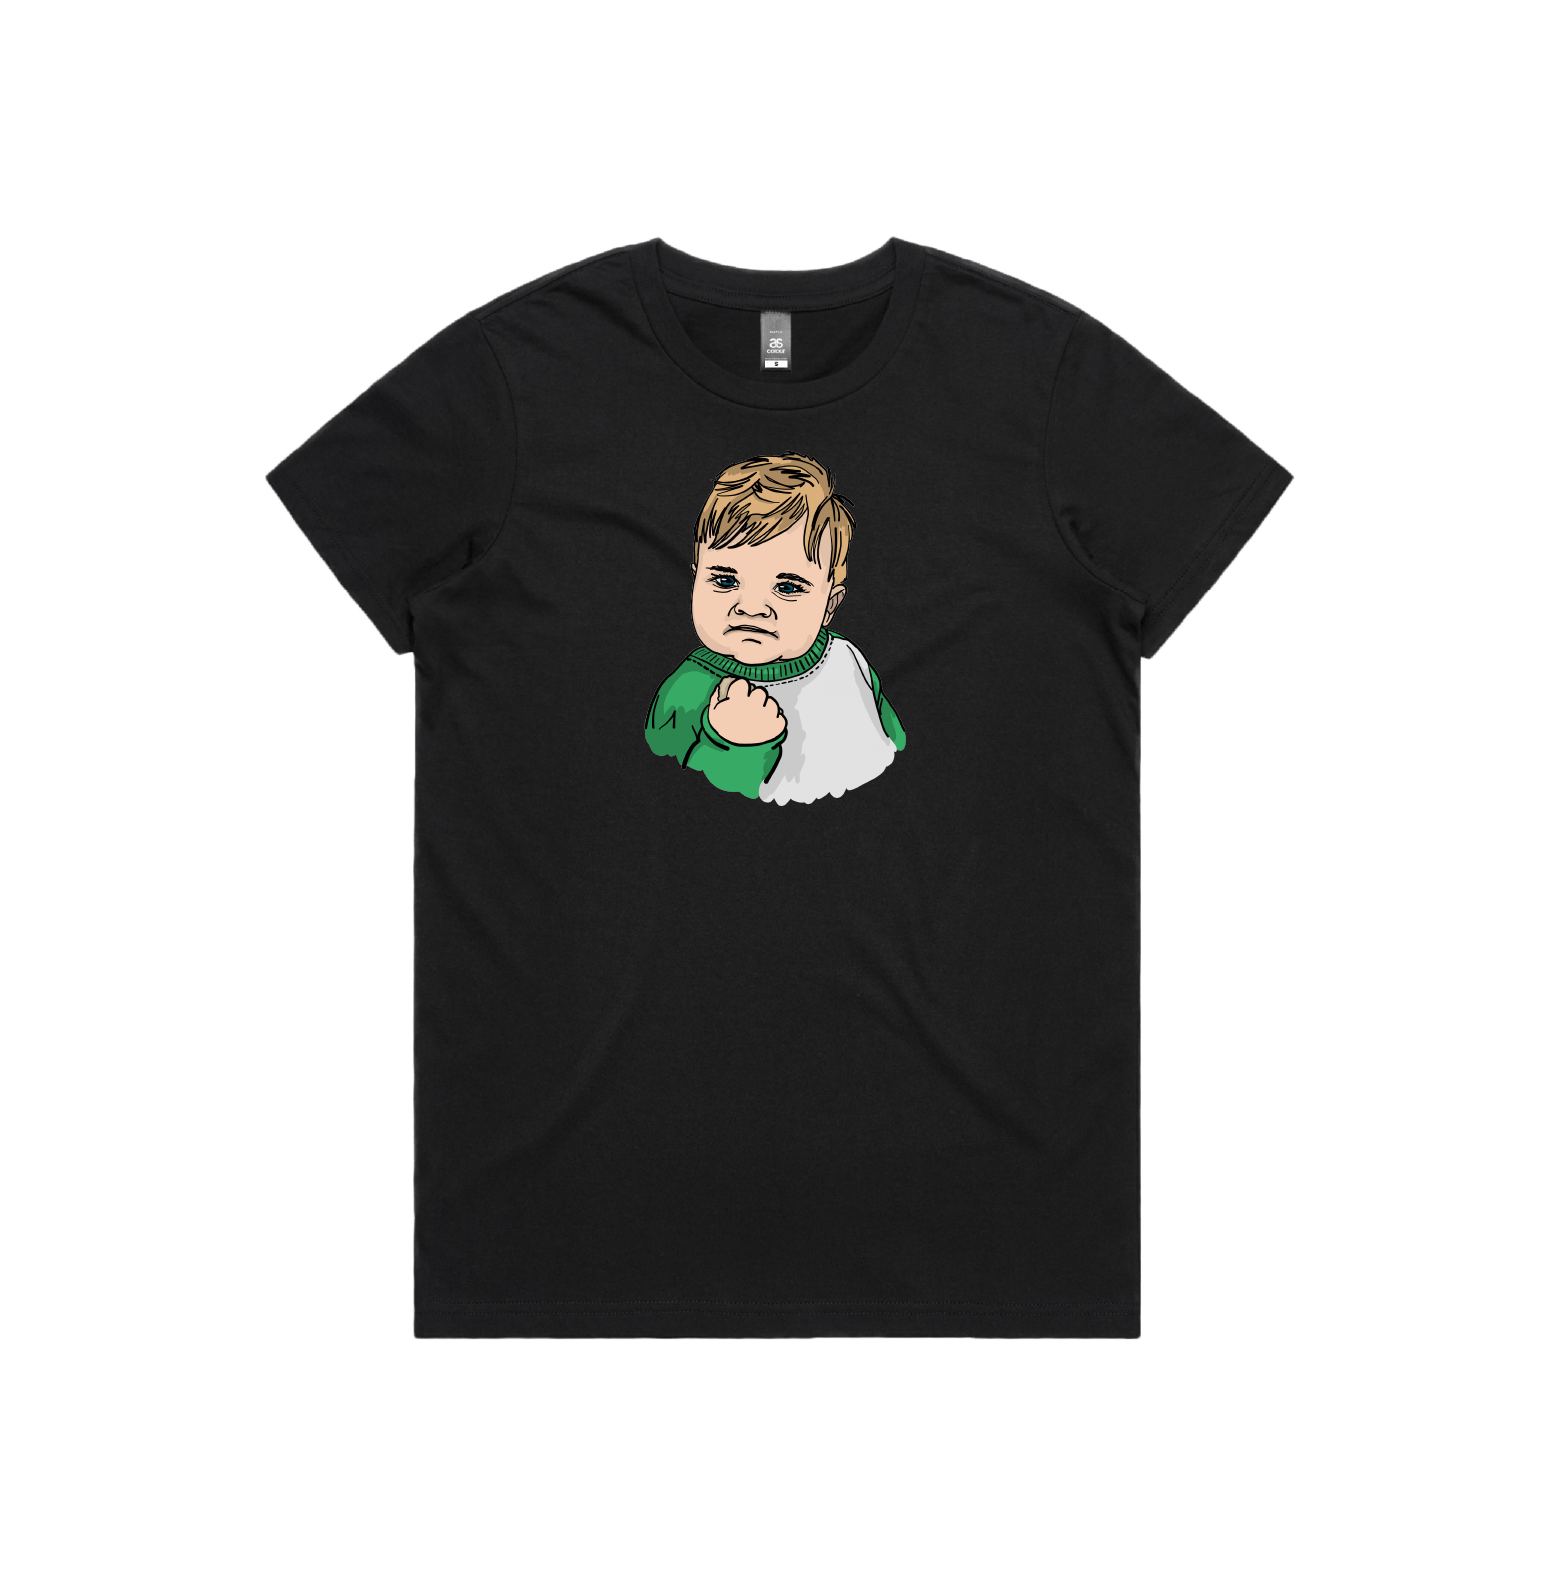 XS / Black / Large Front Design Success Kid ✊ - Women's T Shirt